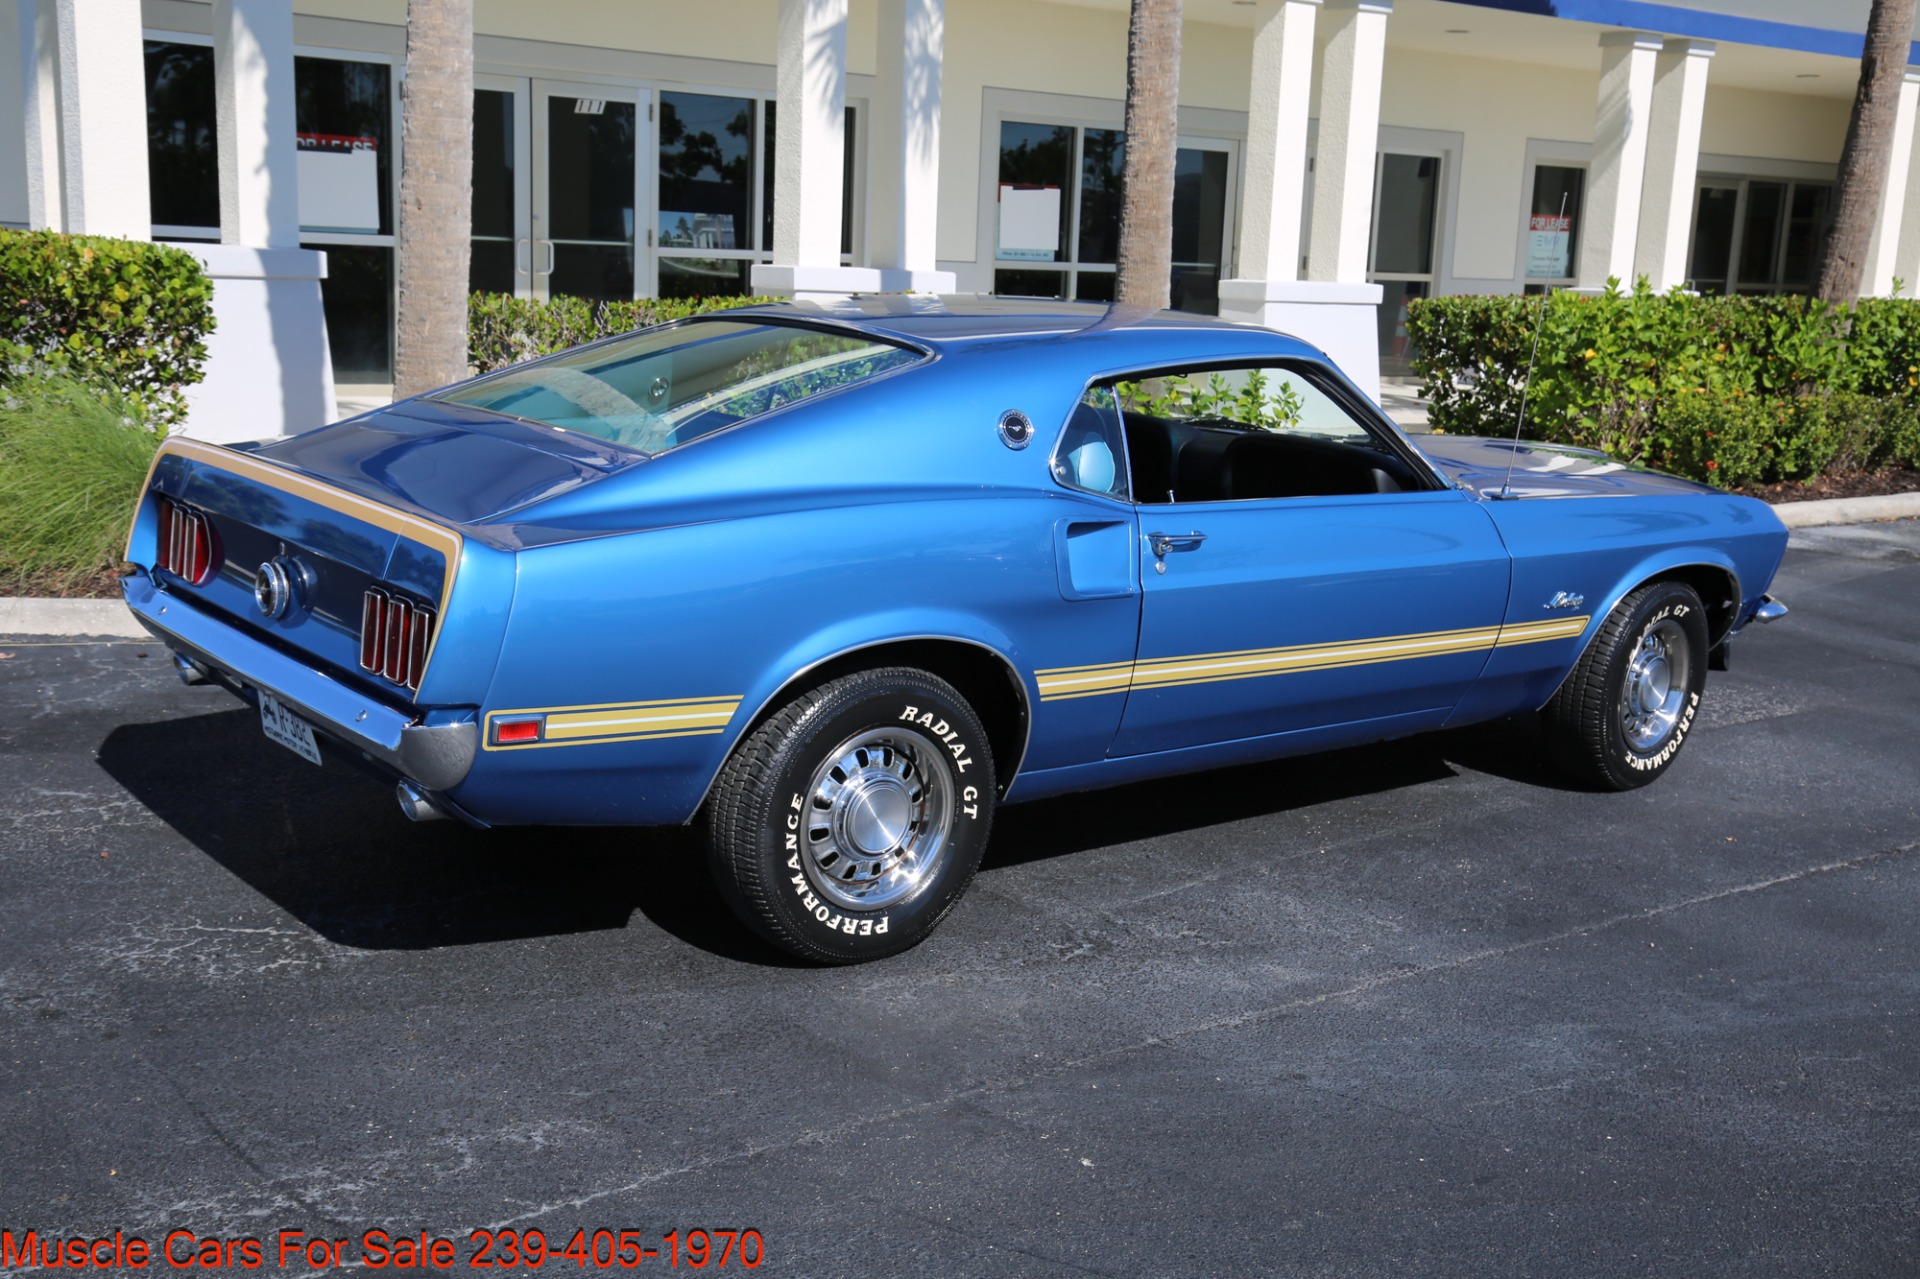 Used-1969-Ford-Mustang-V8-Fastback (3).jpg